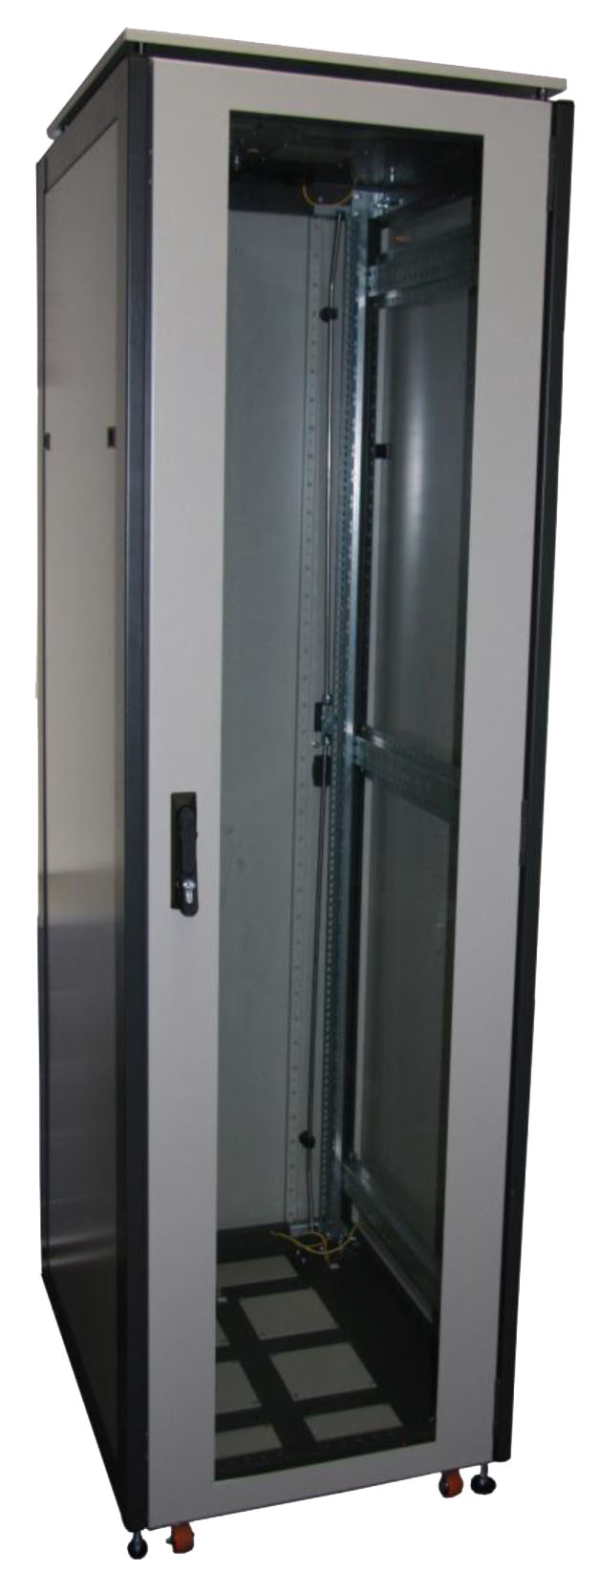 ССКТБ ТОМАСС ШТК-6620Э-00 - шкаф телекоммуникационный 19", 42U, 600х600х2000 мм, с металлической и стеклянной дверью